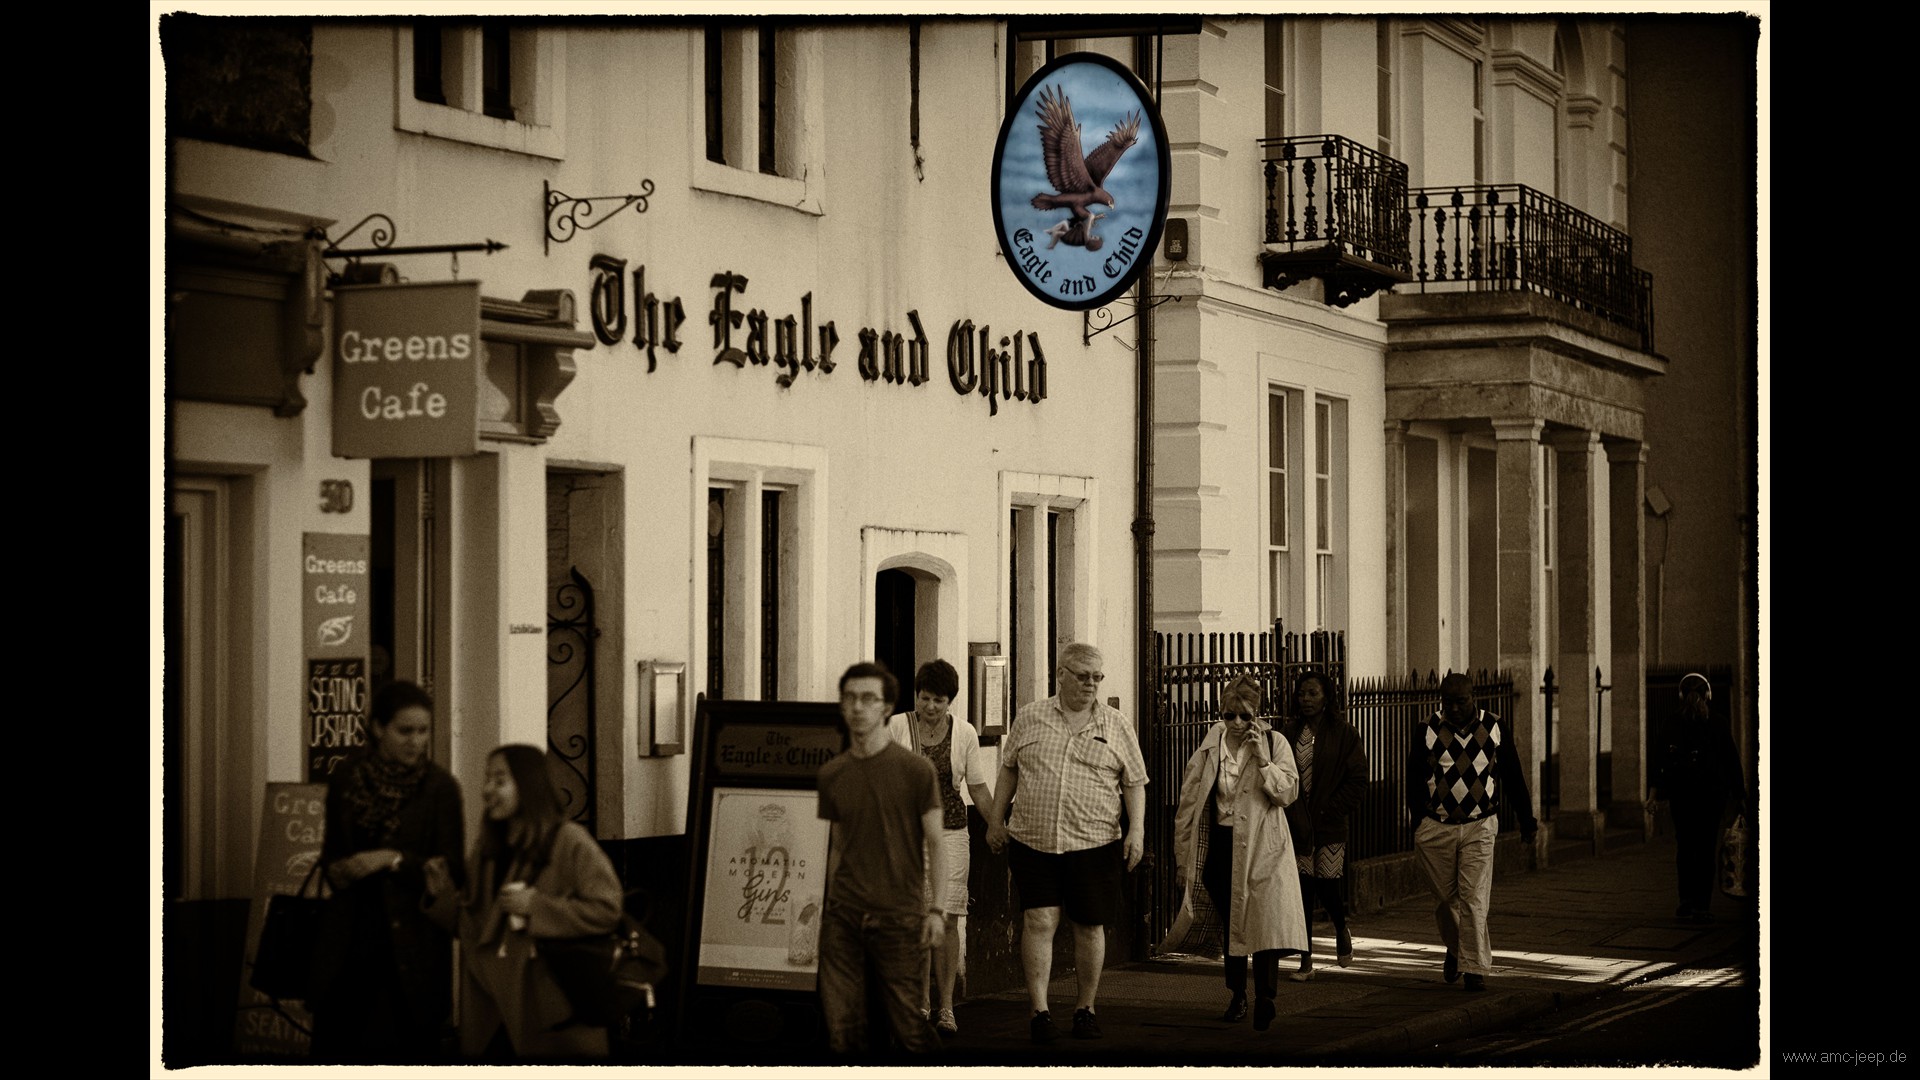 Eagle & Child Pub